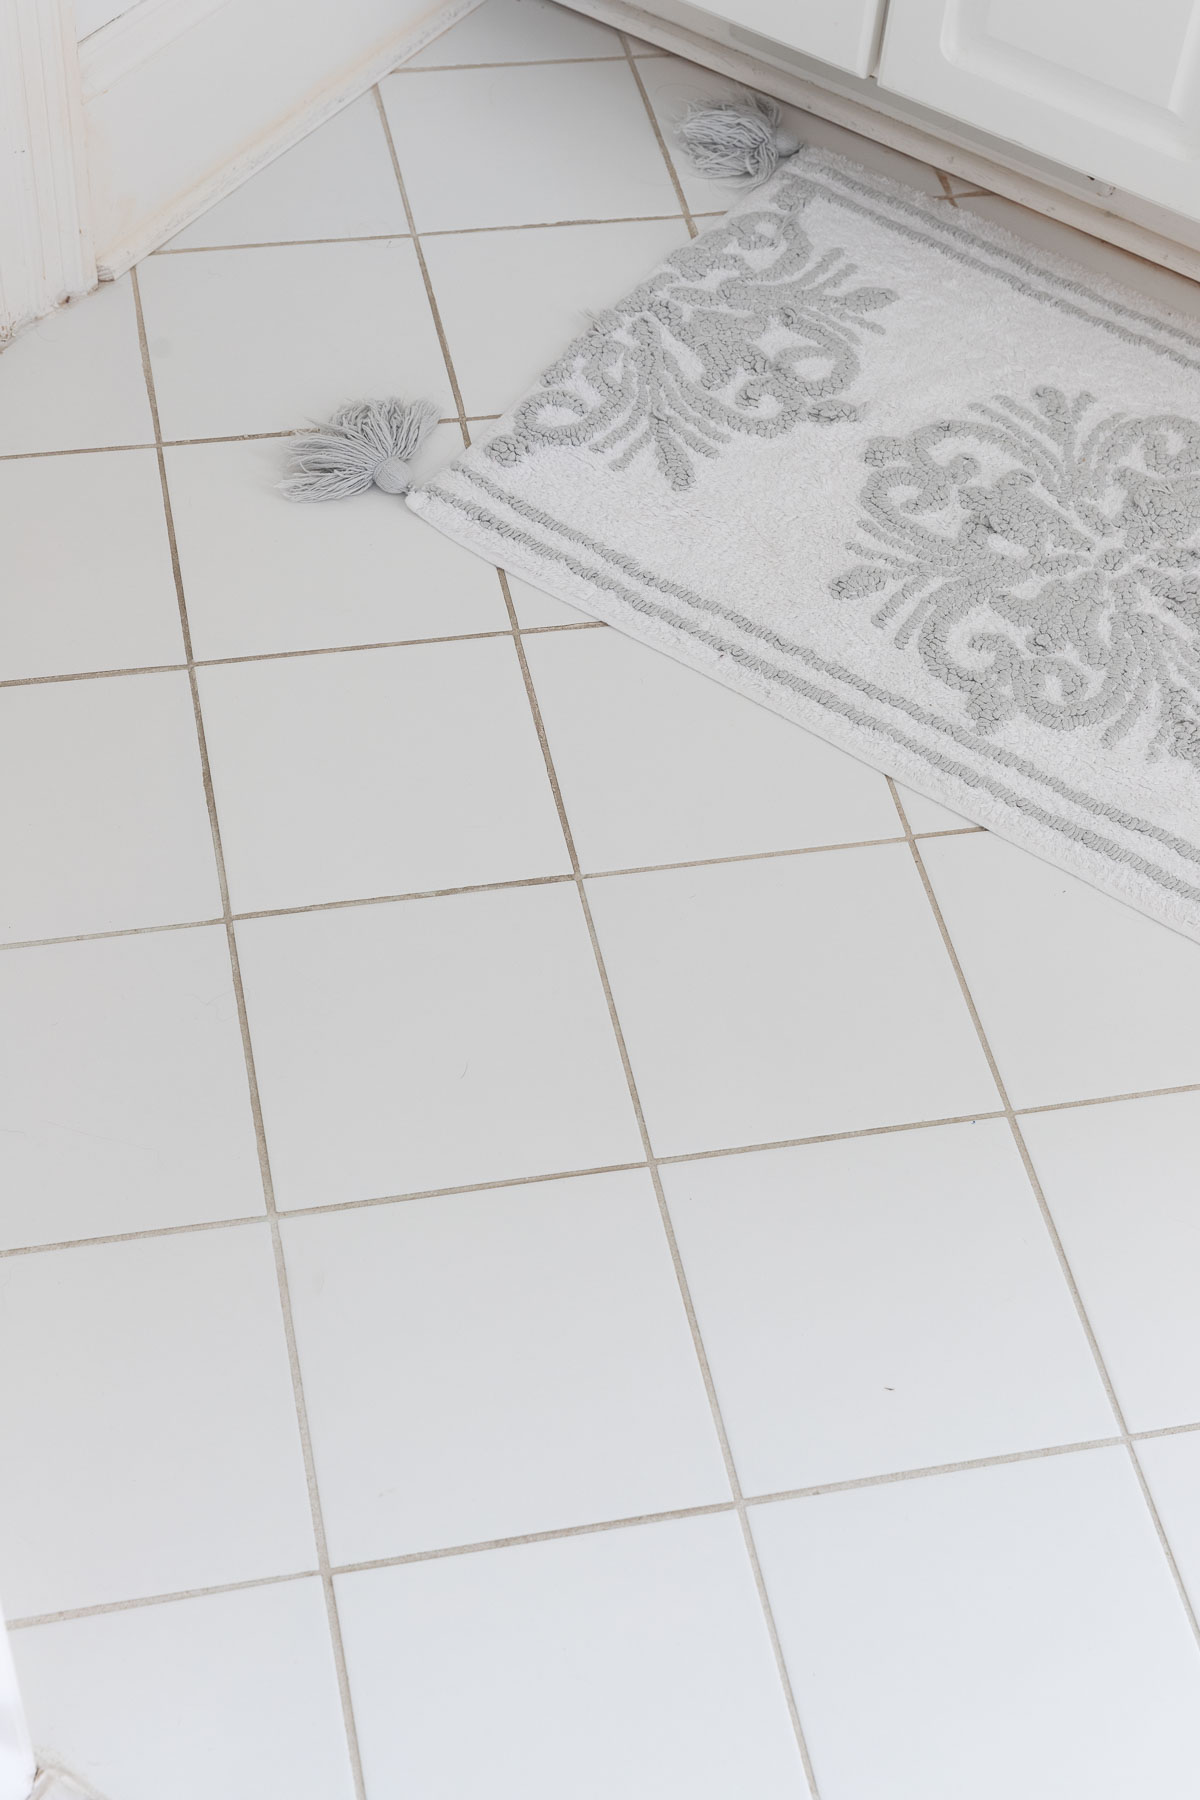 Bathroom floor tile before remodel